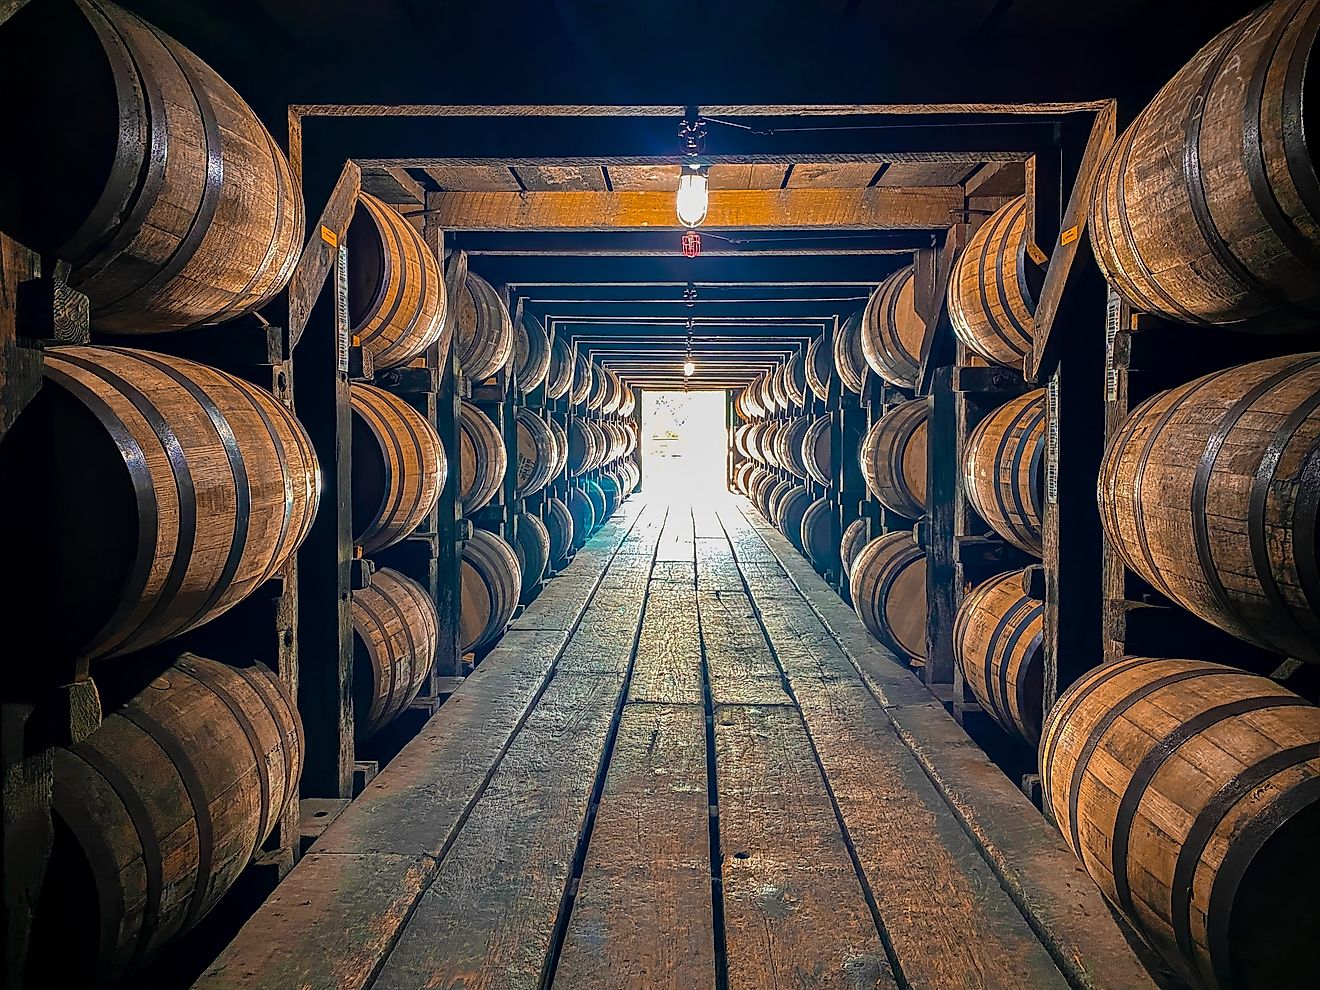 Bourbon barrels aging in a rickhouse